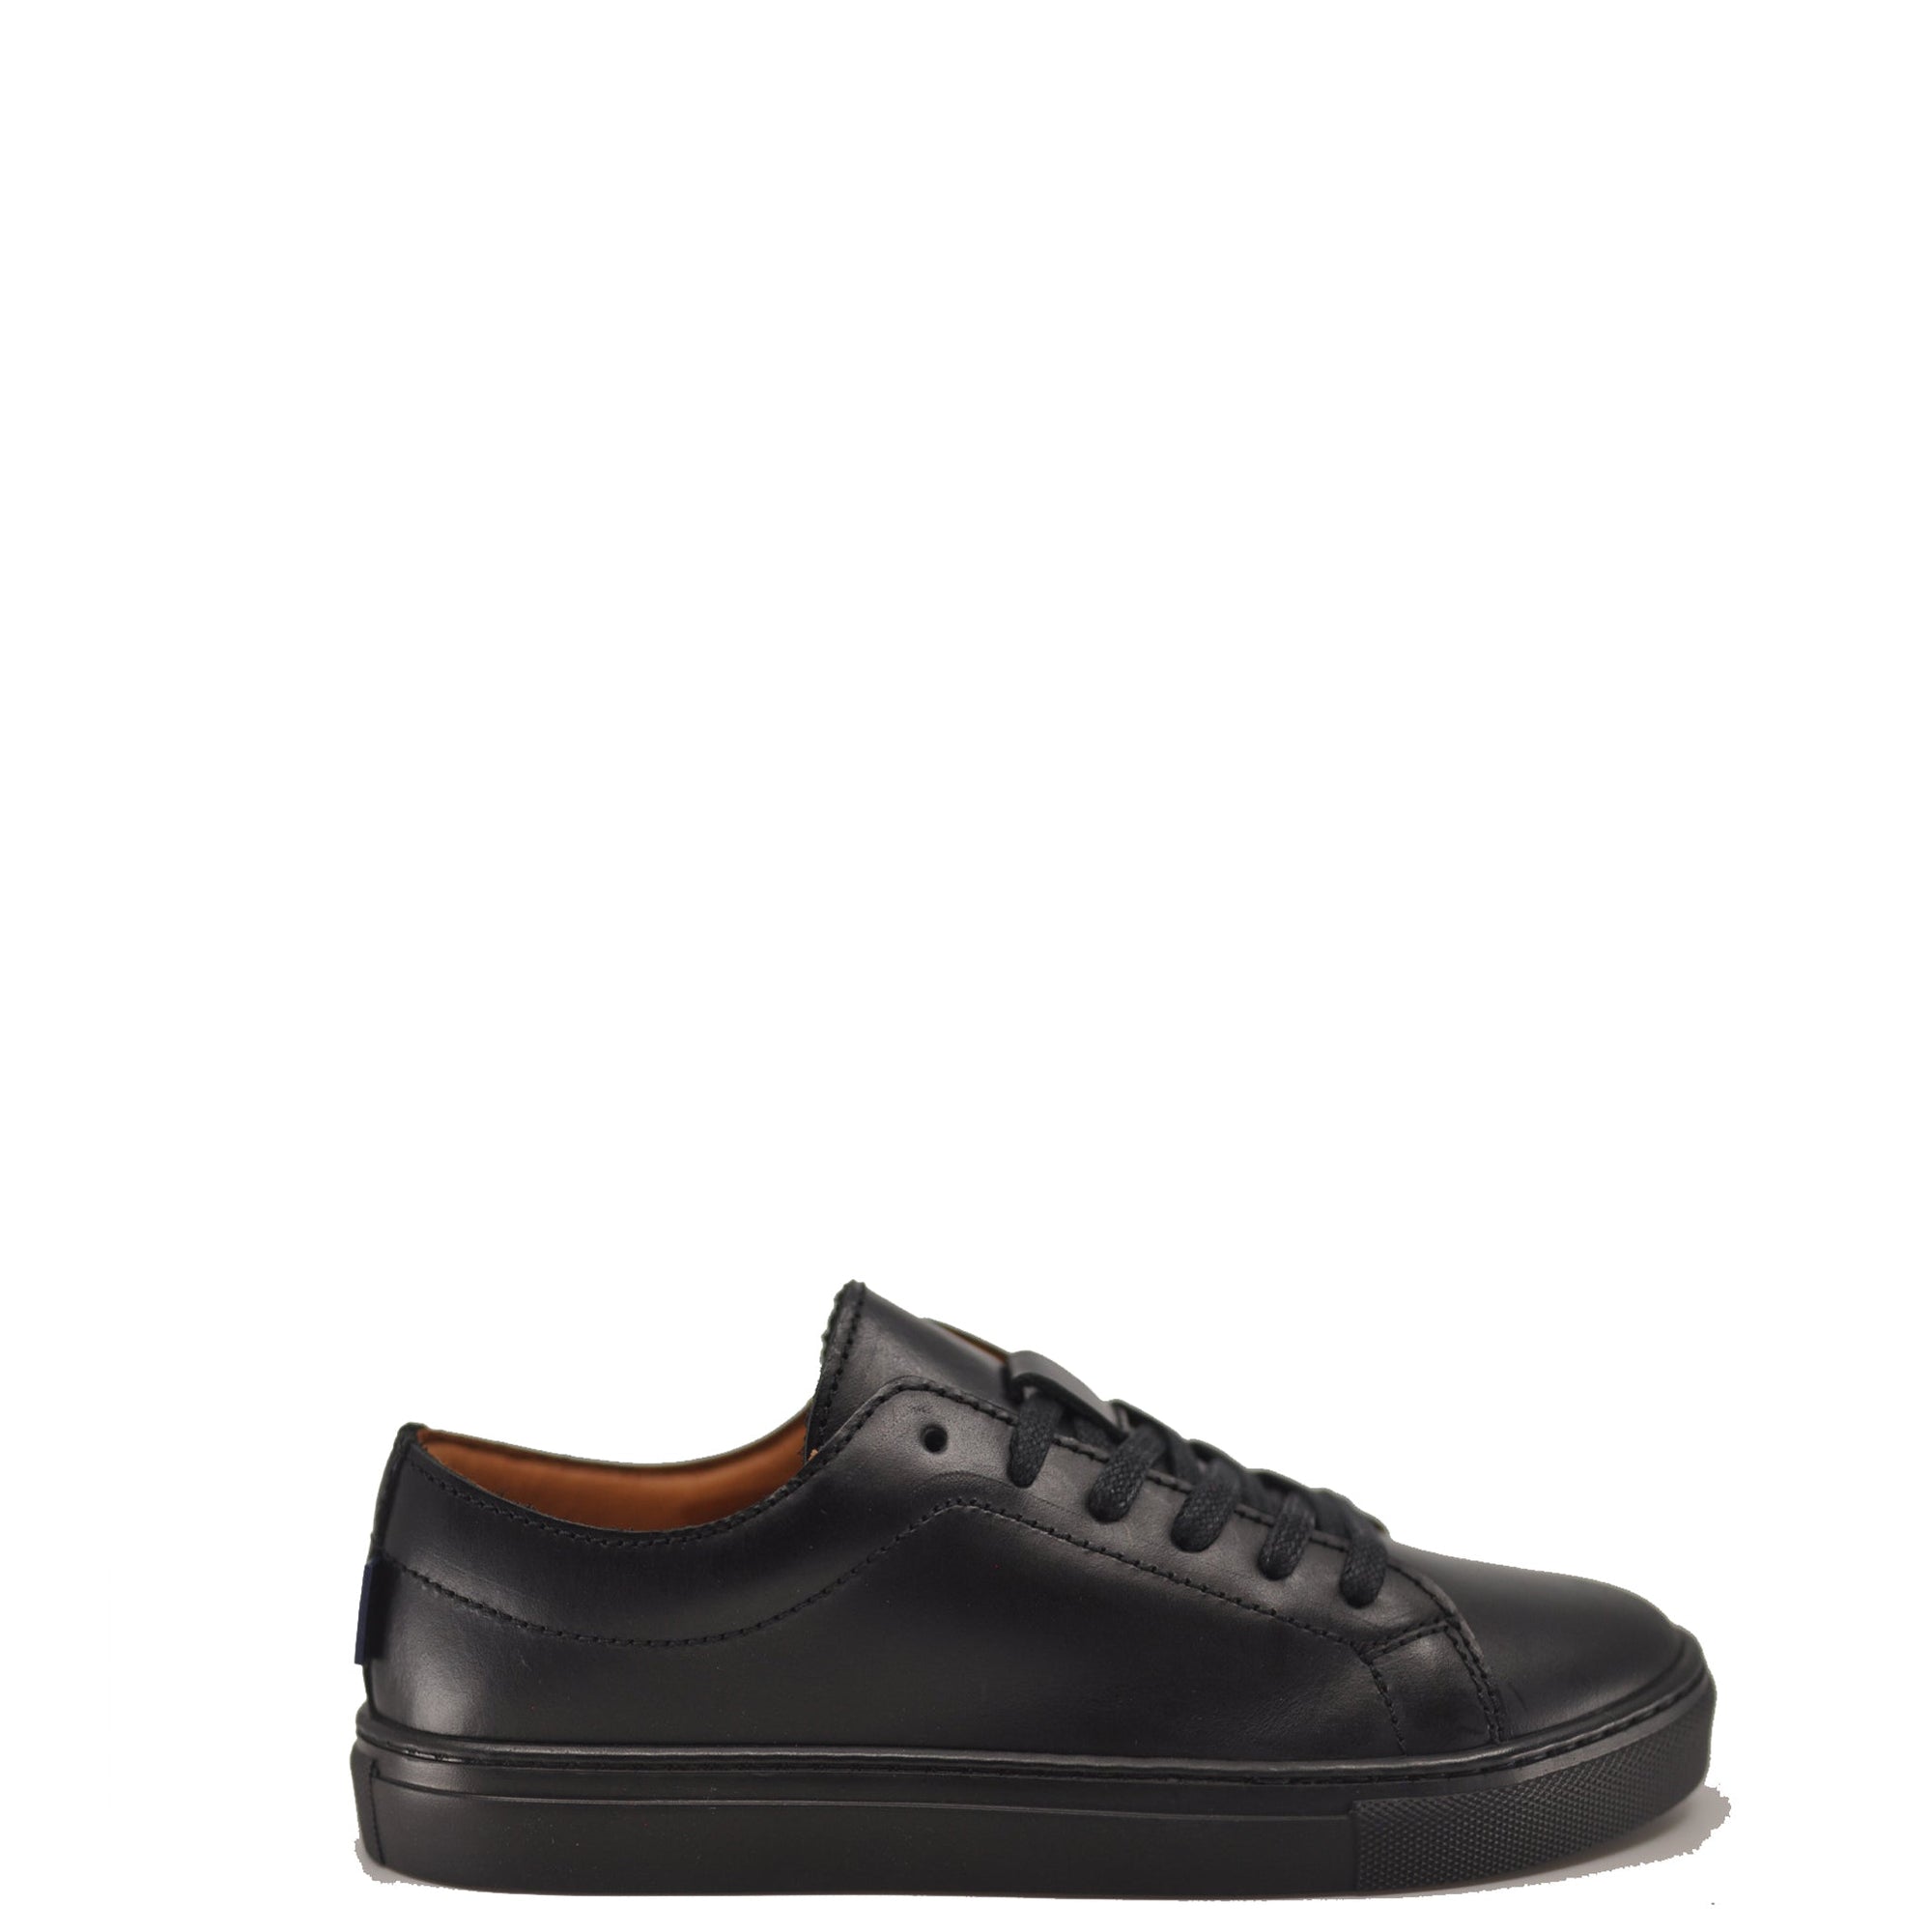 Atlanta Mocassin Black Leather Sneaker-Tassel Children Shoes